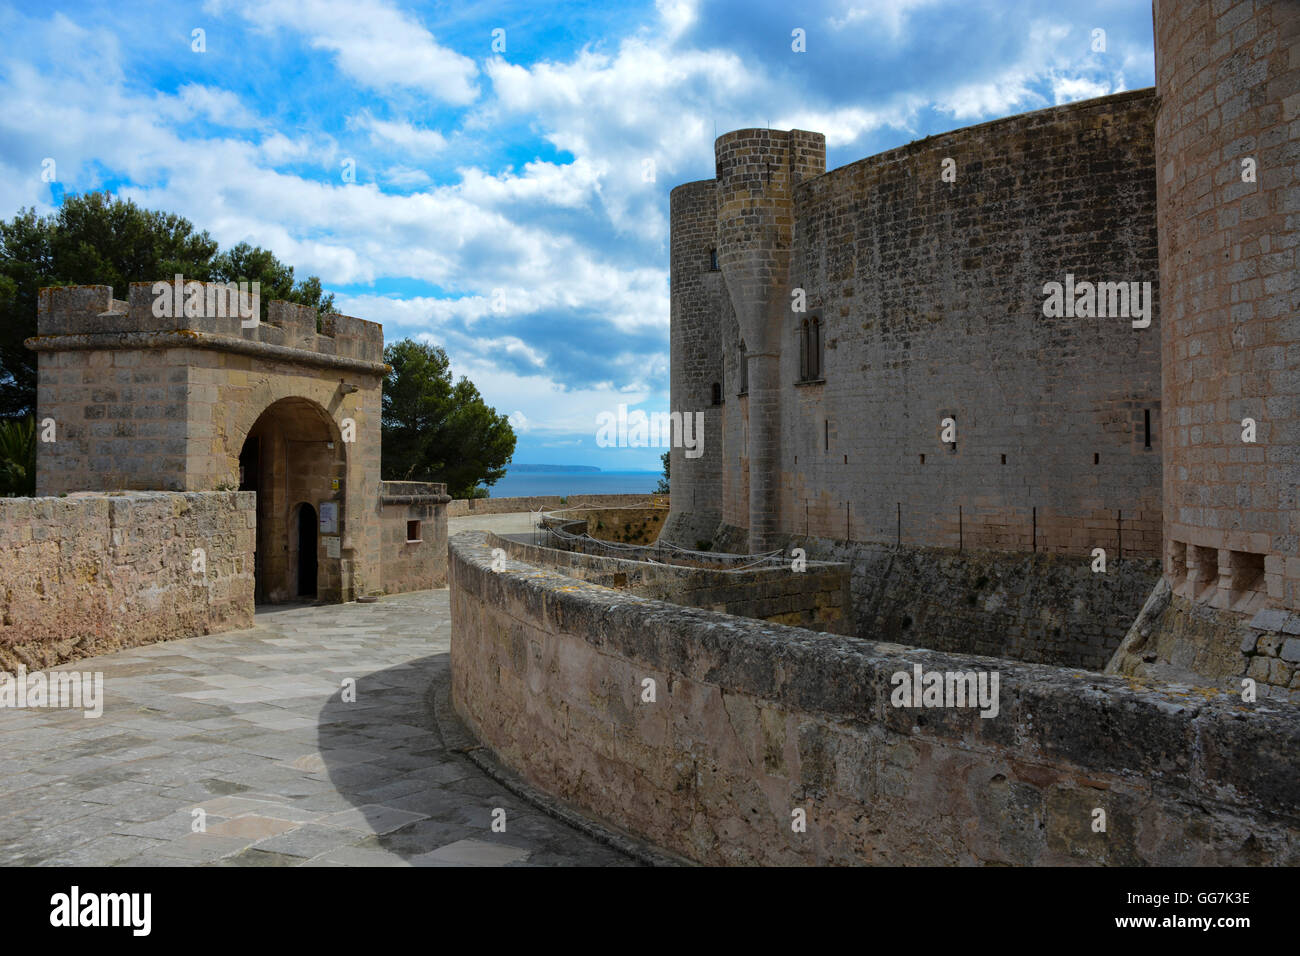 Castell de Bellver (Bellver Castle), Palma, Majorca, Spain Stock Photo